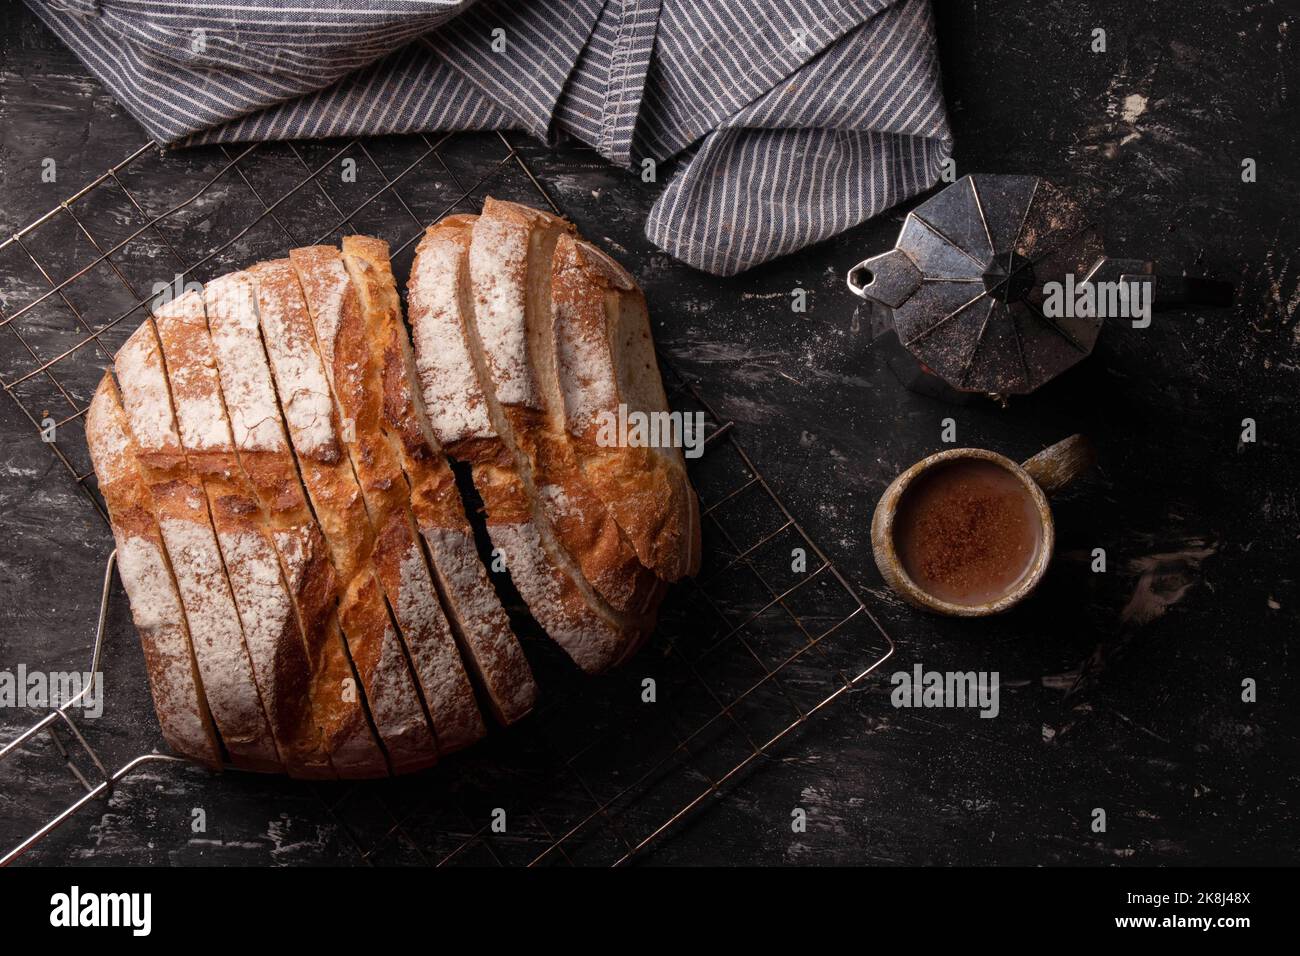 Pain rond de pain de levain fraîchement cuit avec une cafetière et une tasse de café et une serviette sur fond sombre. Banque D'Images